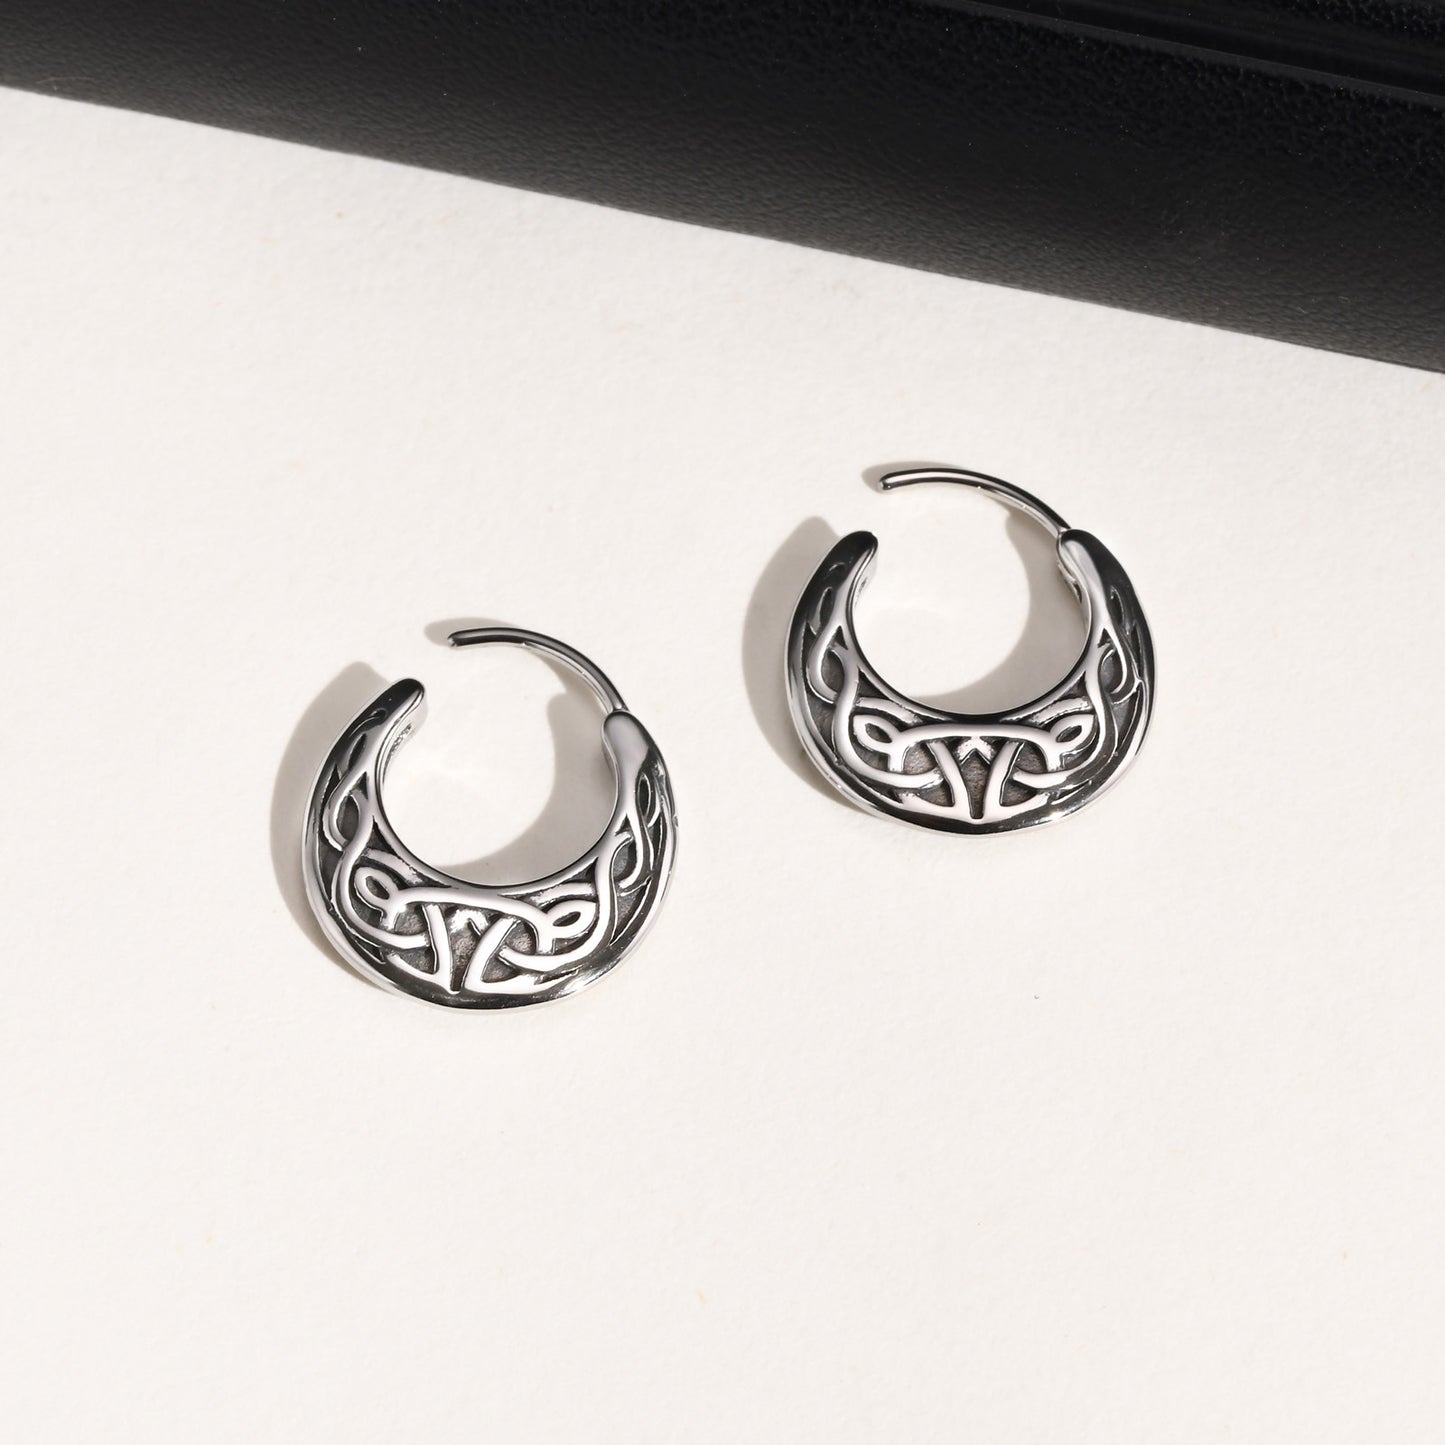 Vnox Nordic Viking Knot Hoop Earrings for Men Women, Stainless Steel Huggies, Ethnic Punk Rock Male Ear Jewelry